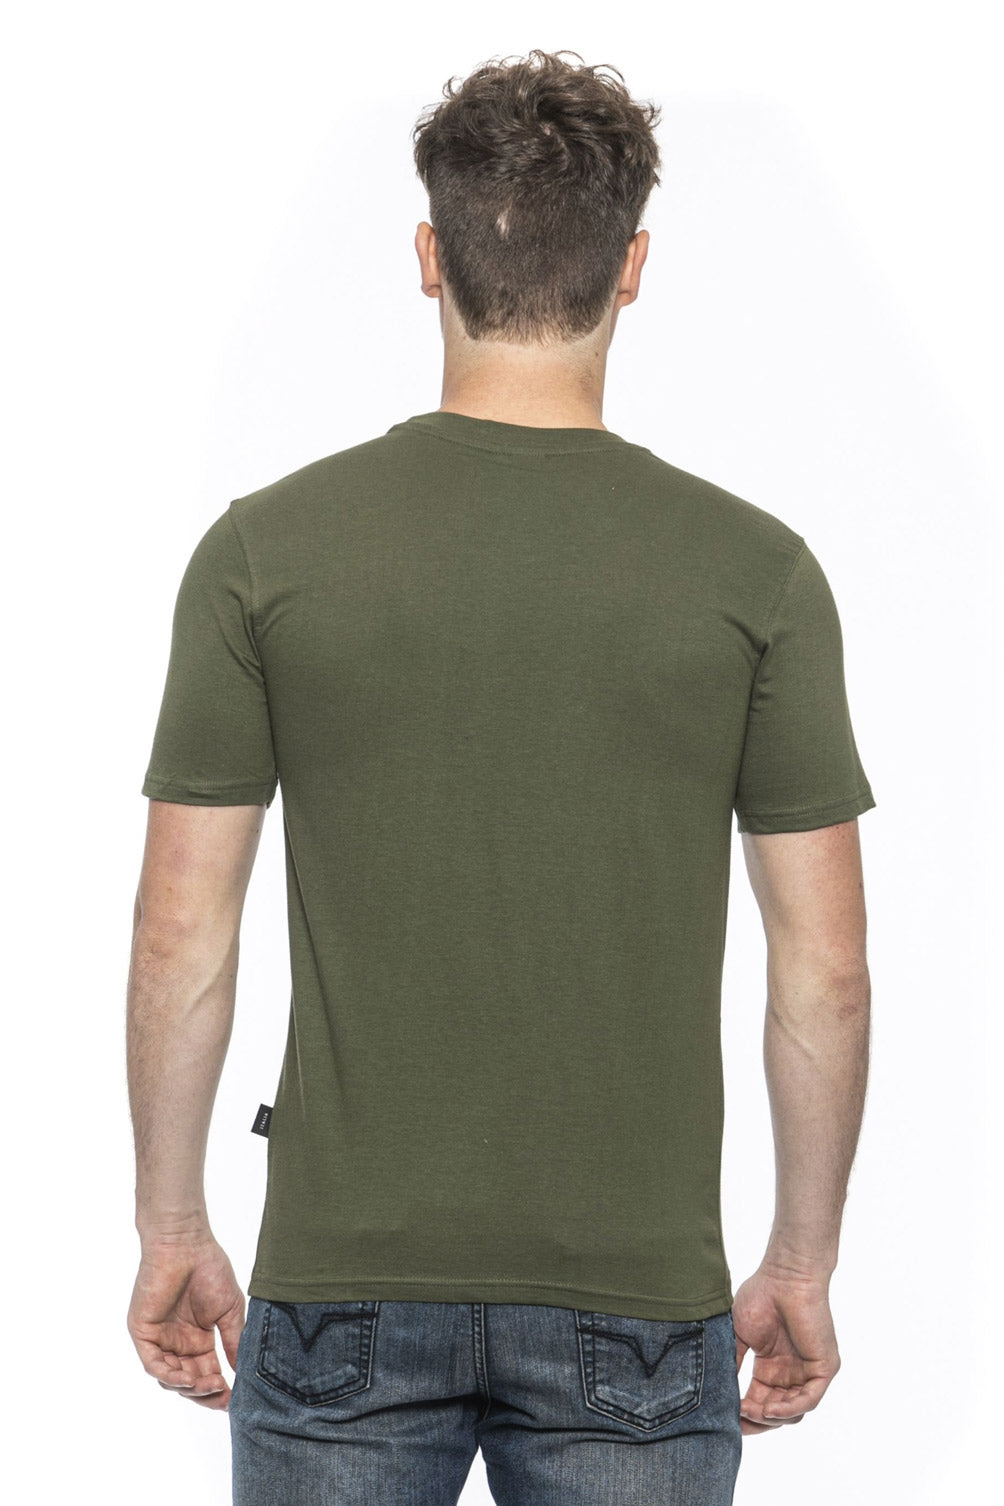 19V69 Italia Mens T-Shirt Green ERIC OLIVE